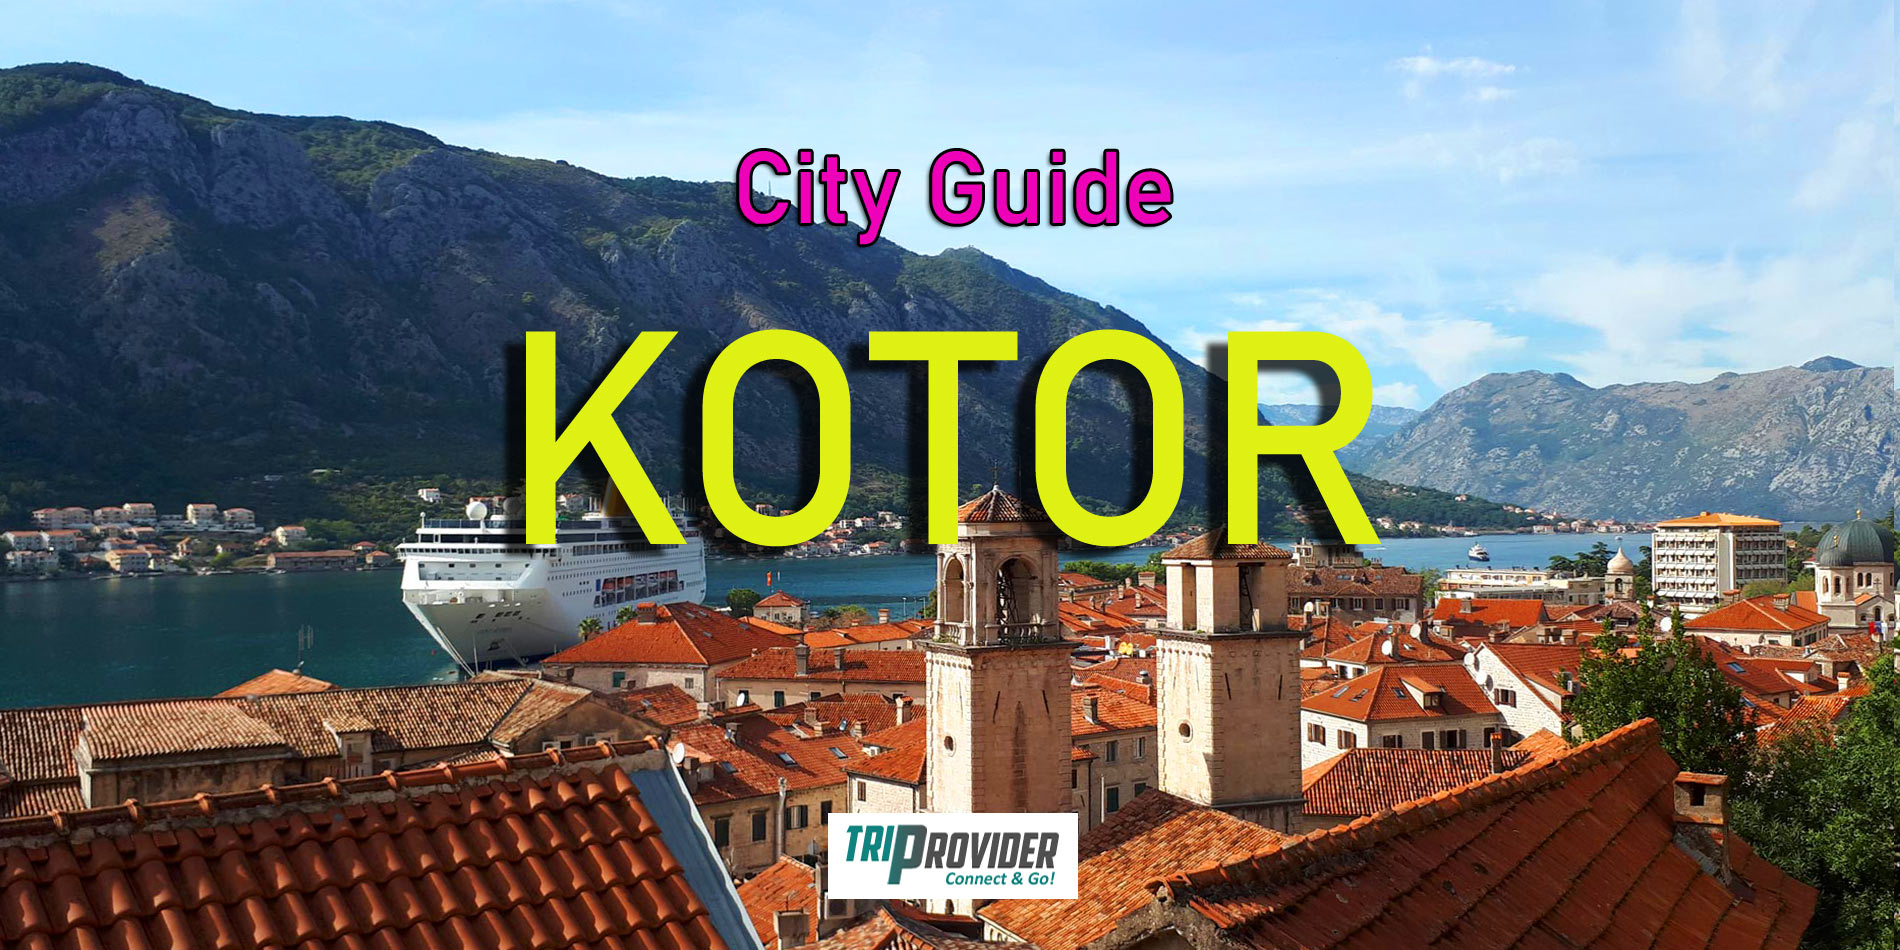 Kotor City Guide Blurb header - Triprovider